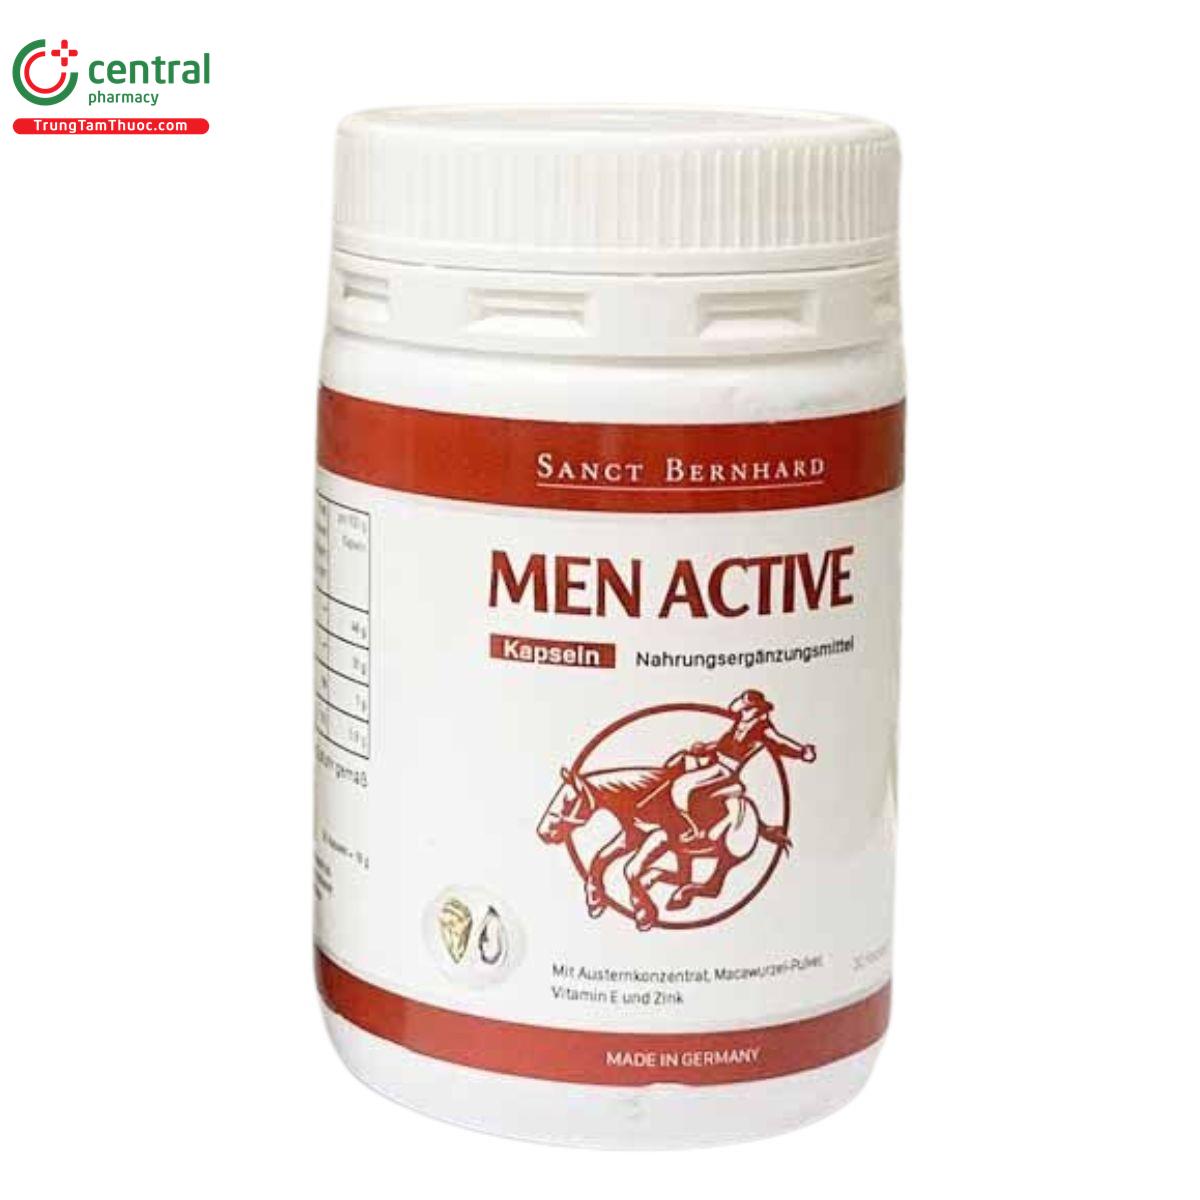 men active kapseln 6 I3067